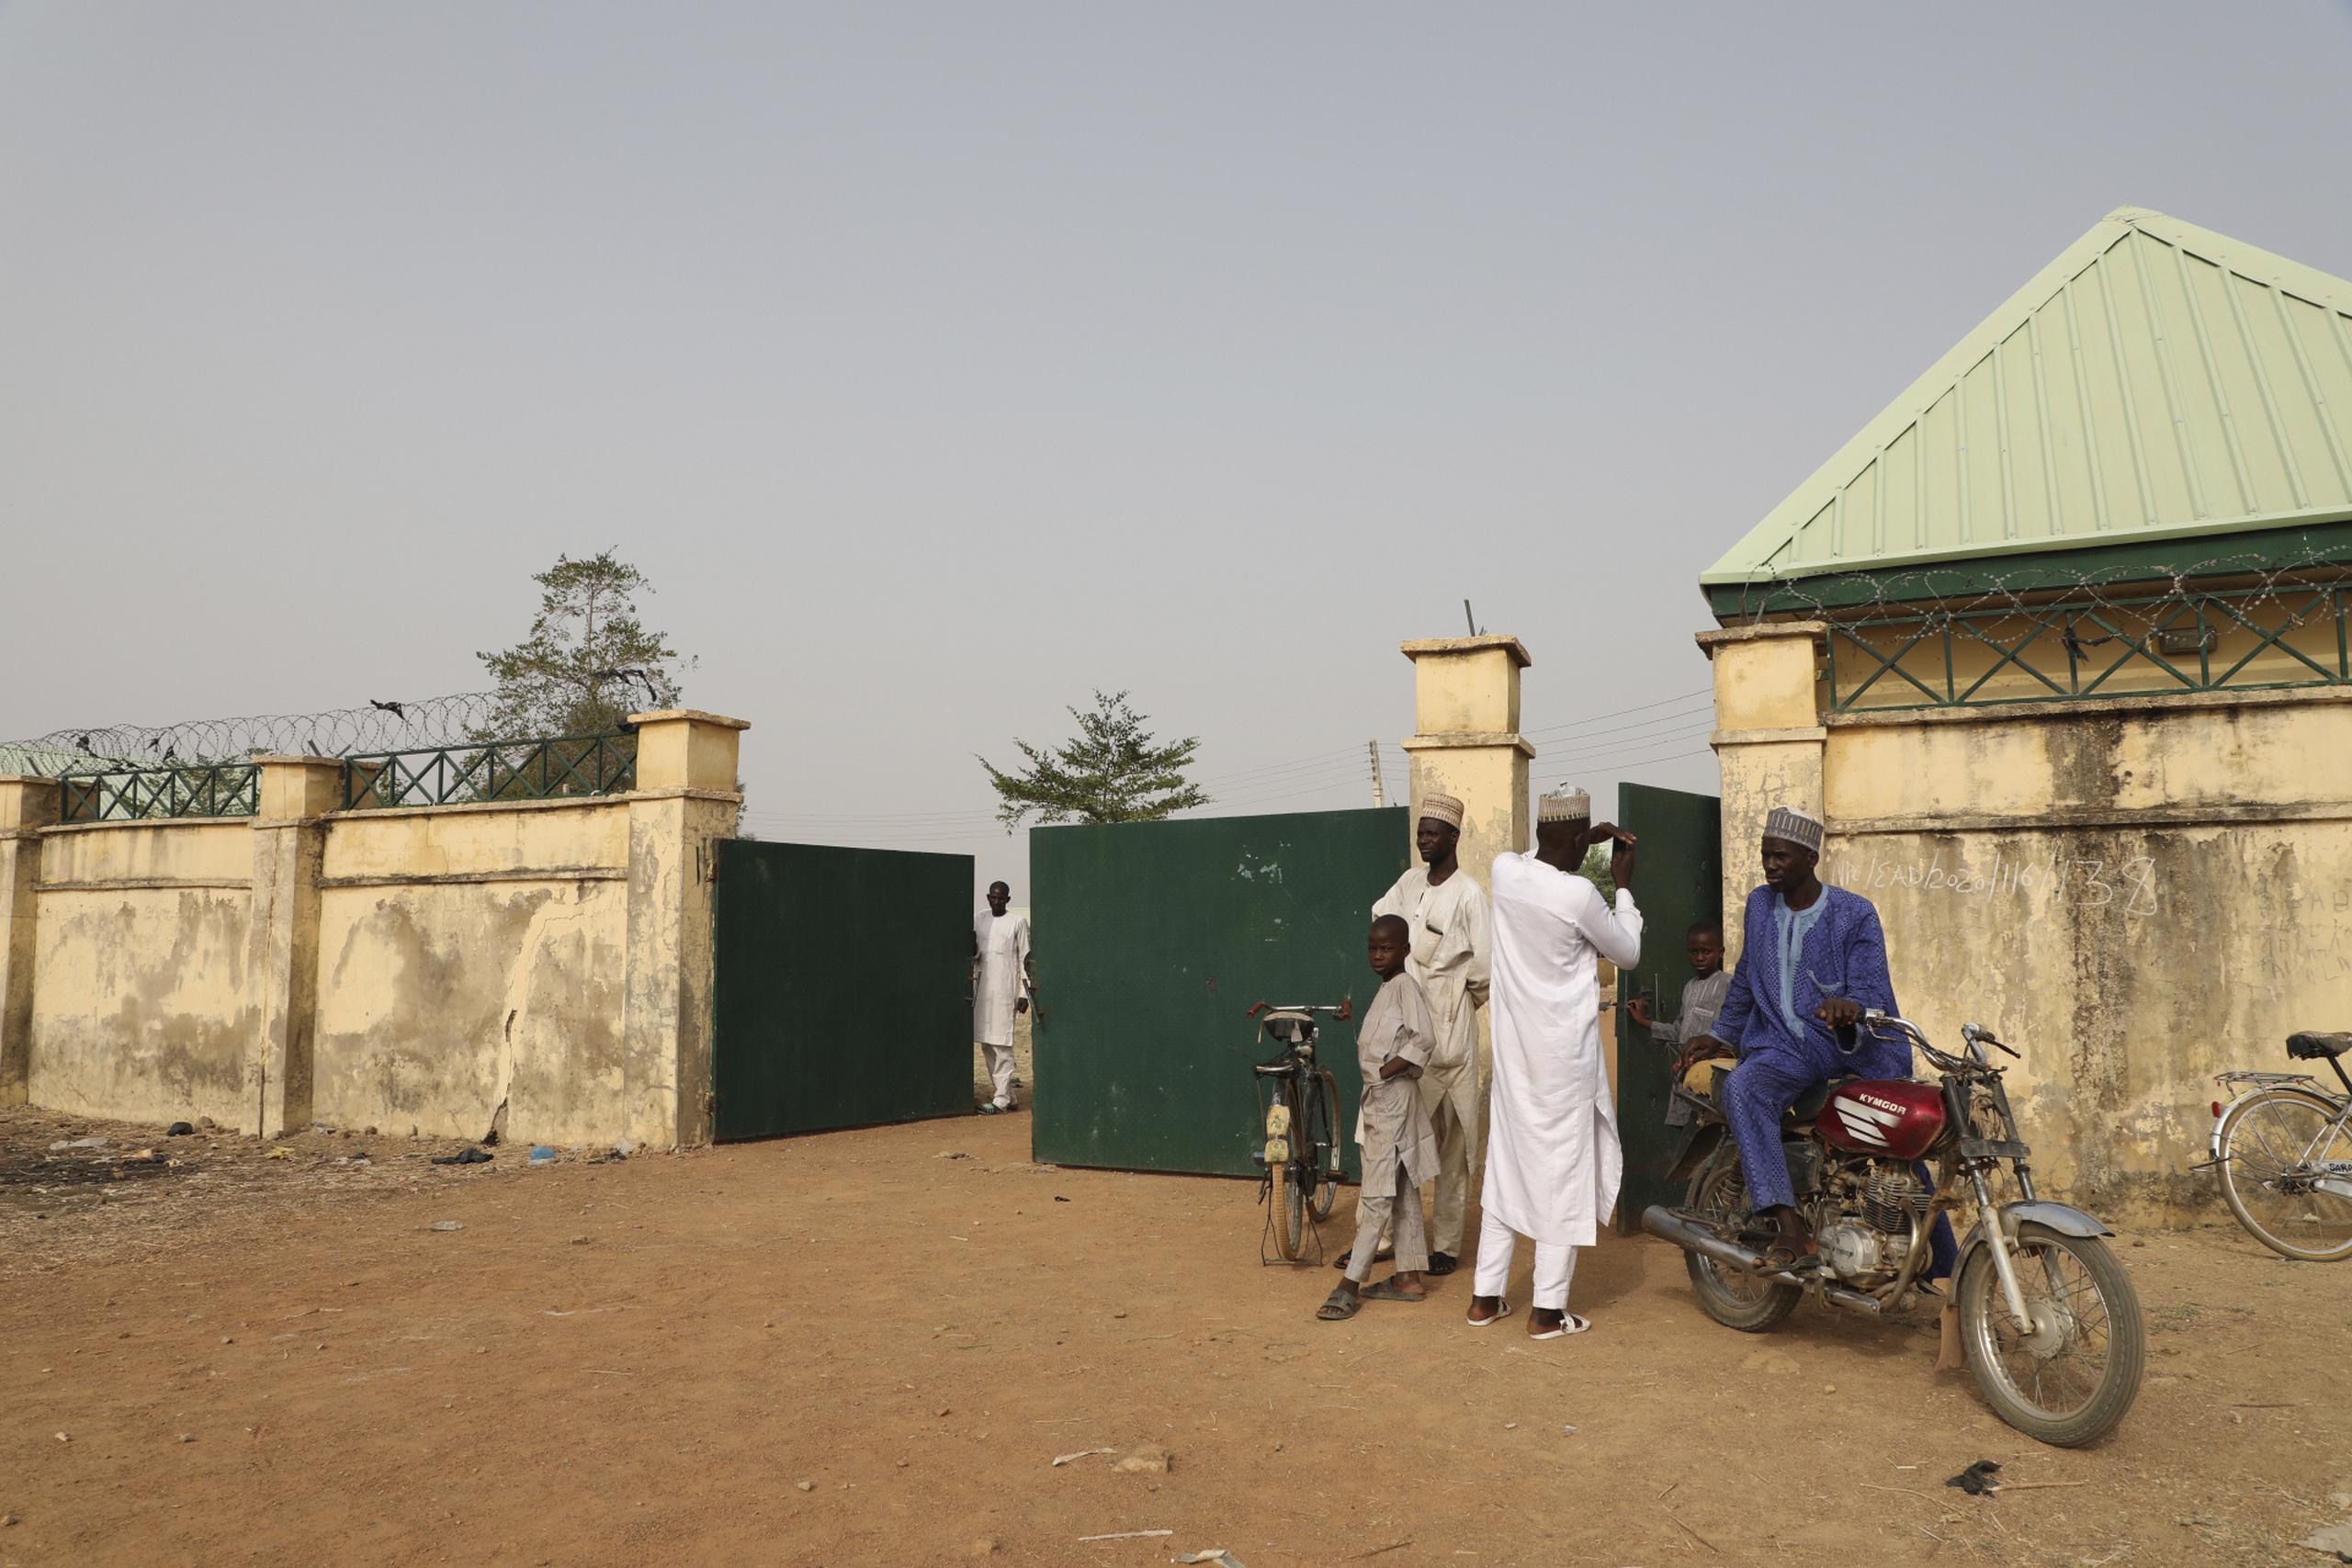 Según los voluntarios, los asaltantes -conocidos comúnmente en Nigeria como “bandidos”- empezaron sus ataques el pasado martes, y se extendieron hasta el jueves.